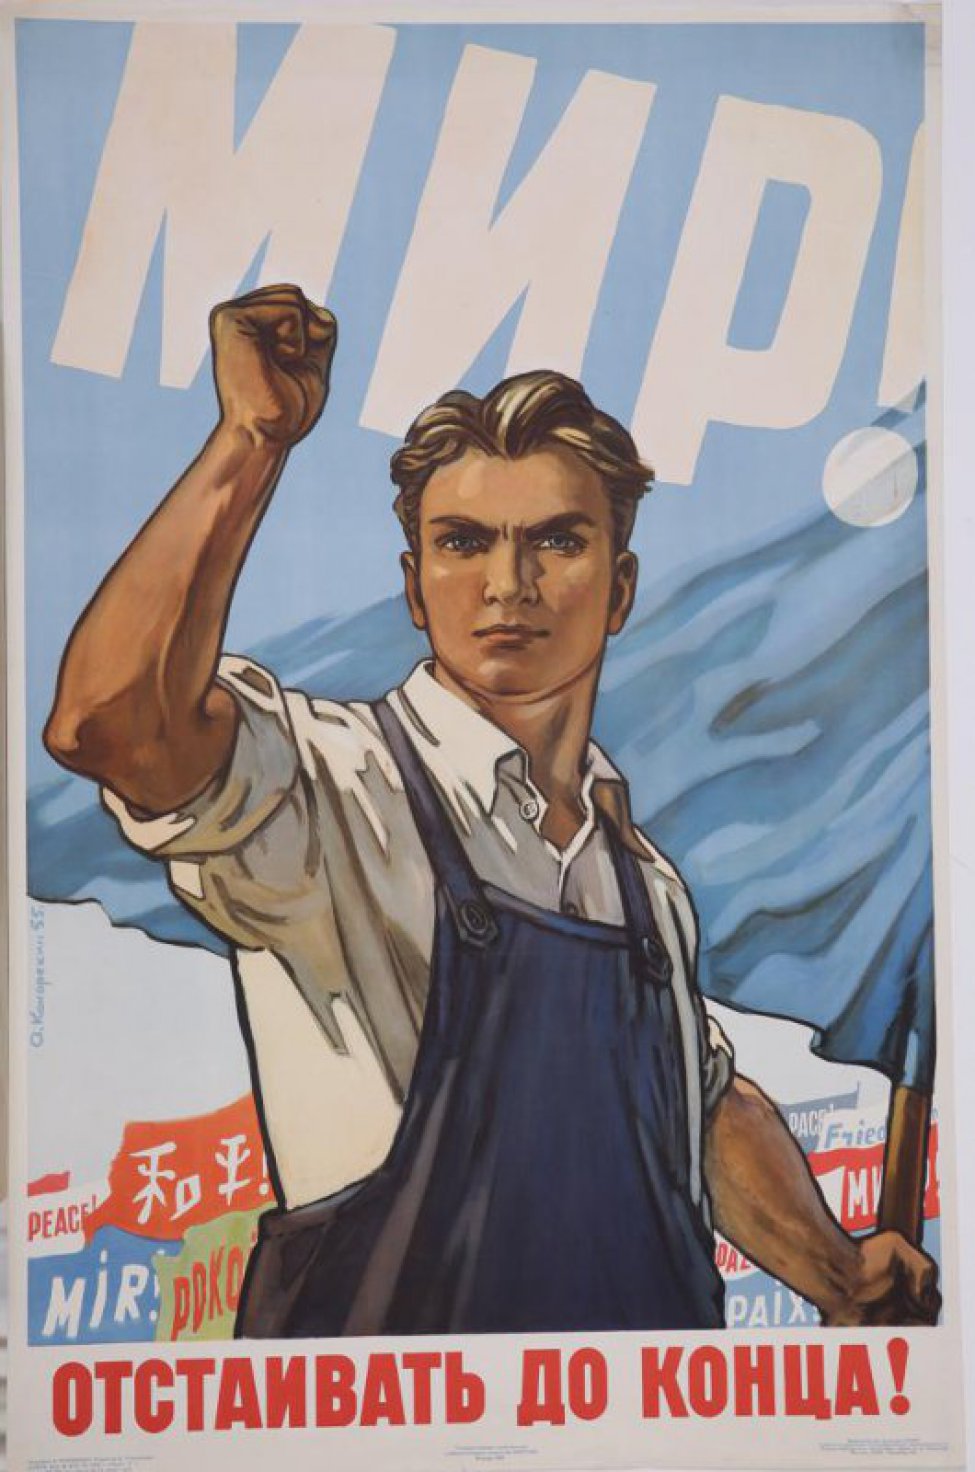 Изображен молодой рабочий в светлой рубашке и синем комбинезоне. В левой руке он держит синее знамя, на котором белыми буквами напечатано "мир", правая рука поднята и сжата а кулак.